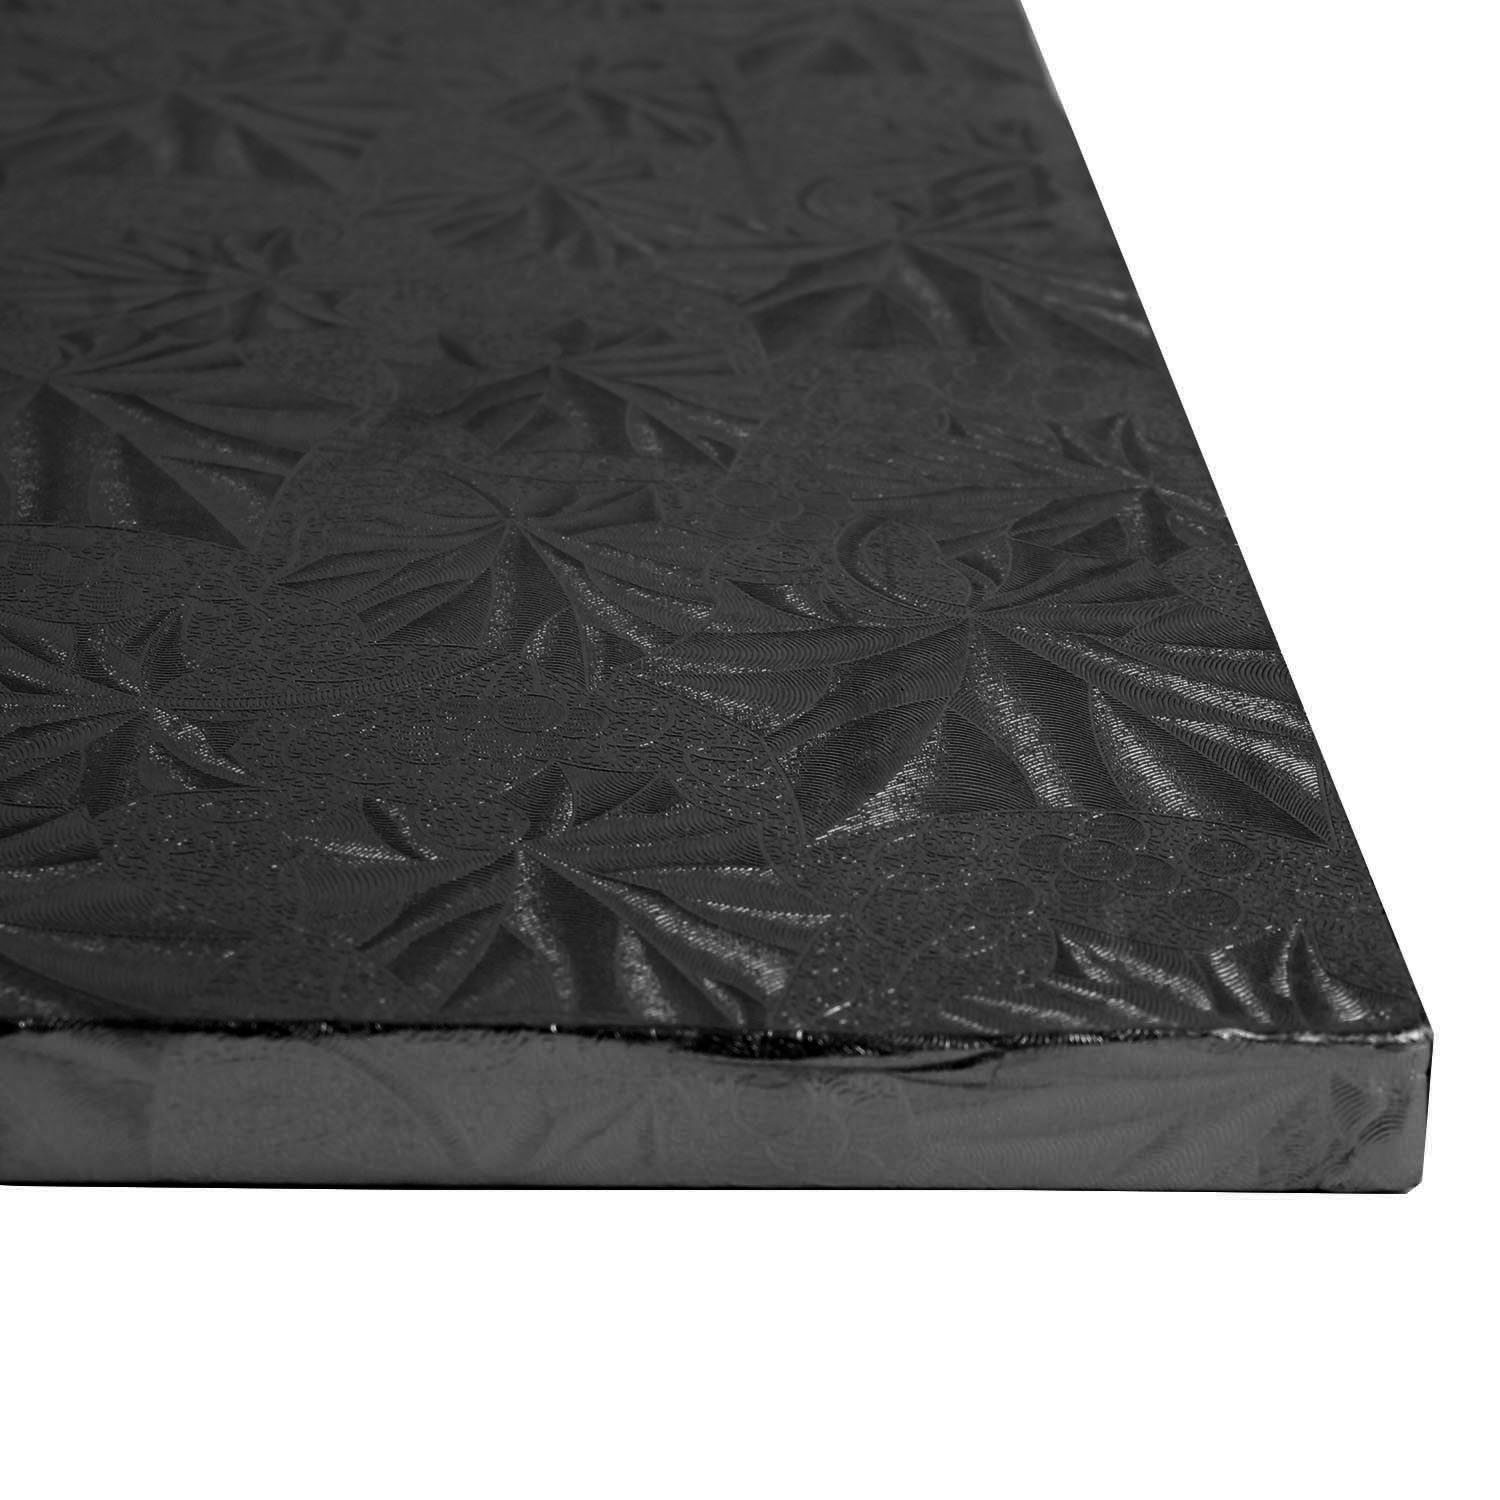 Square Black Foil Cake Drum Board, 14" x 1/2" Thick  image 1